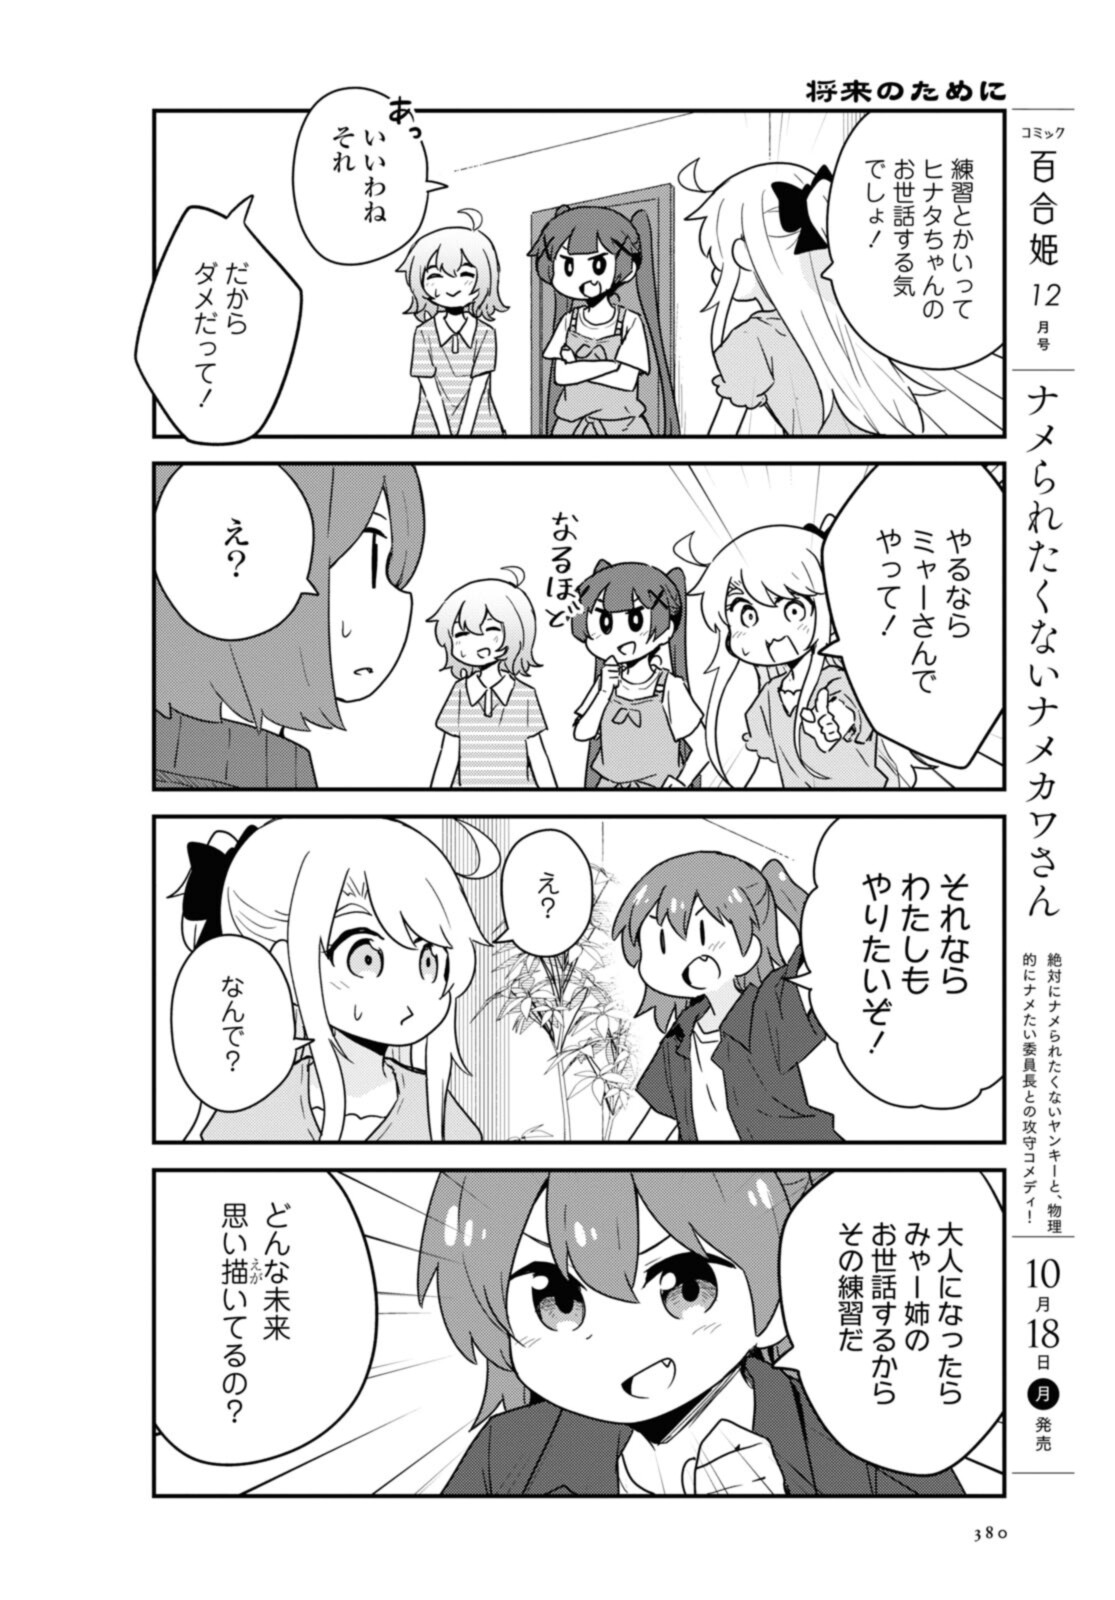 Watashi ni Tenshi ga Maiorita! - Chapter 87.1 - Page 4